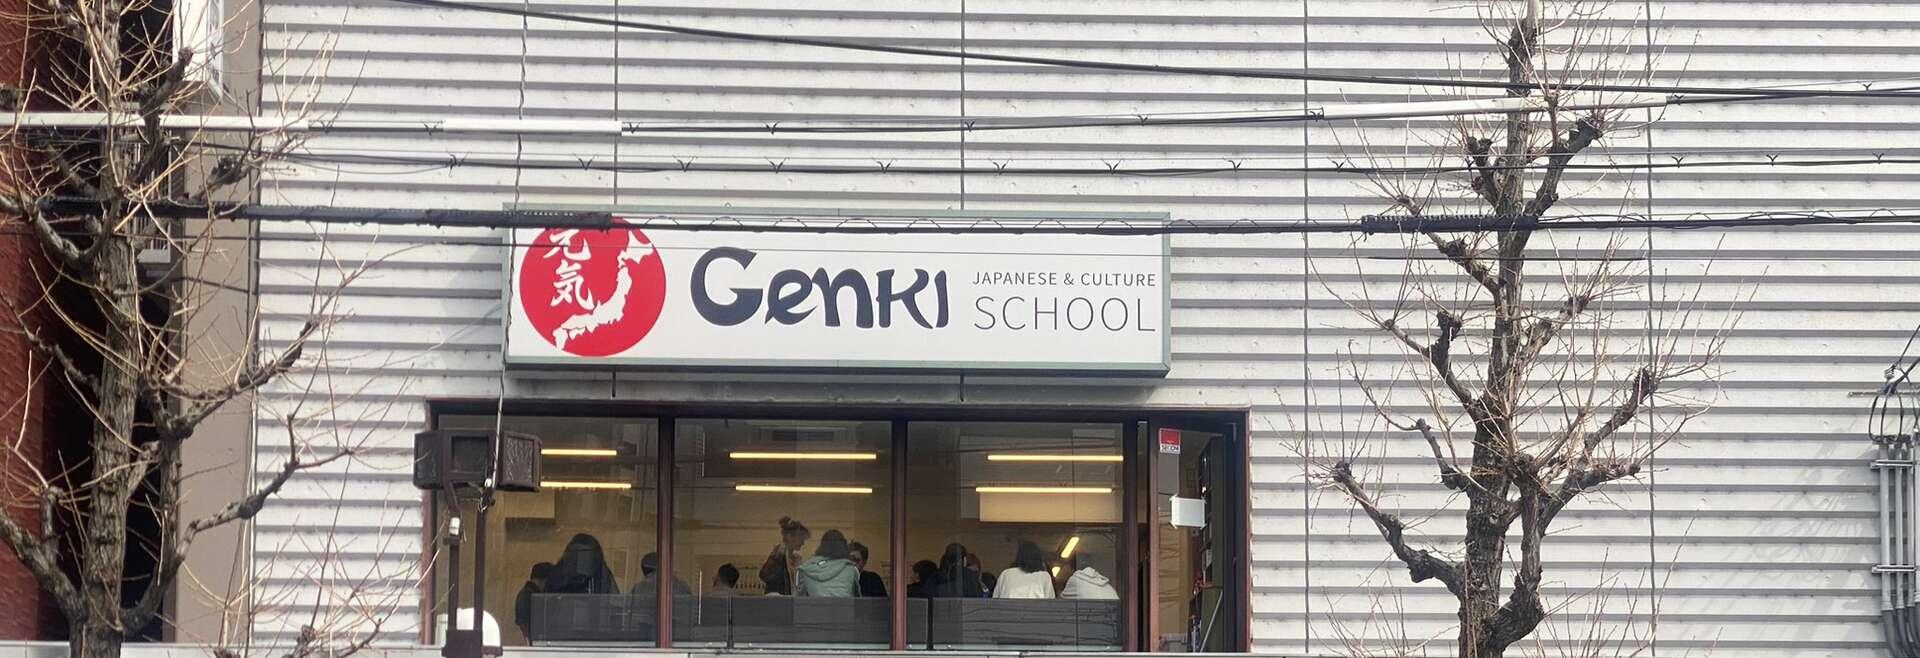 Séjour linguistique Japon, Genki Japanese School Kyoto, Bâtiment scolaire